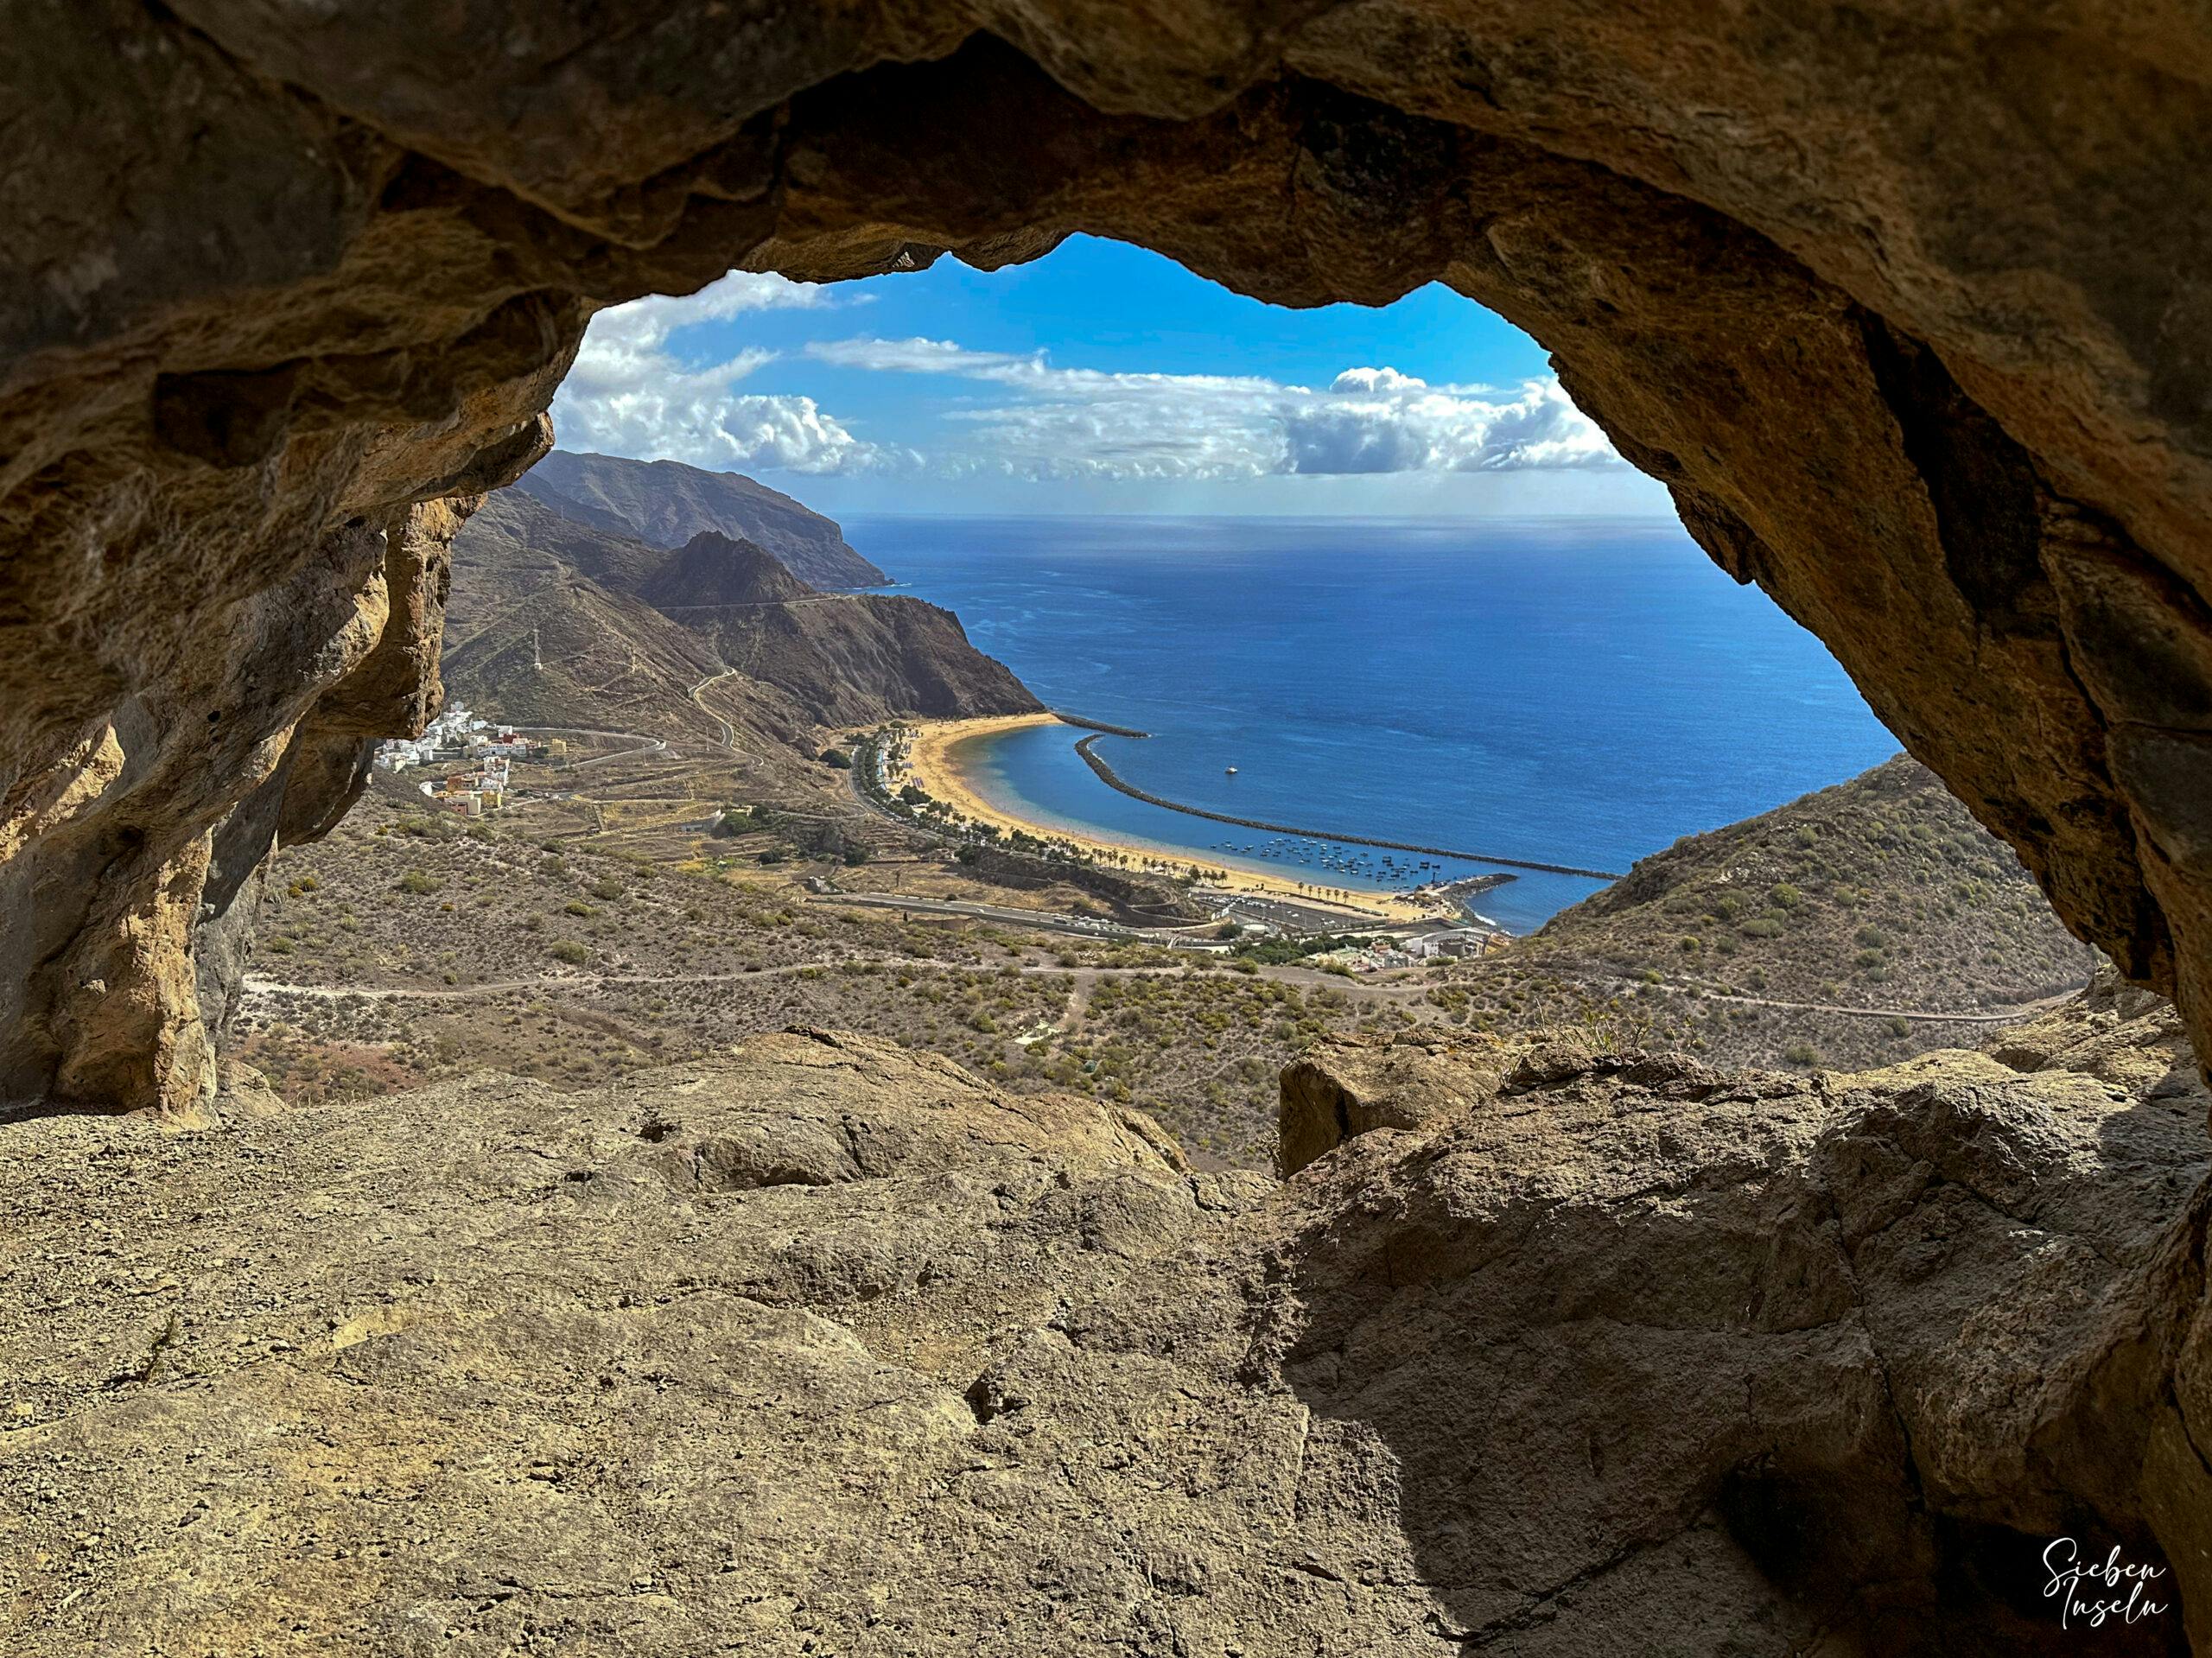 Pequeña excursión circular por encima de San Andrés con búnker, puerta de roca y vistas impresionantes 